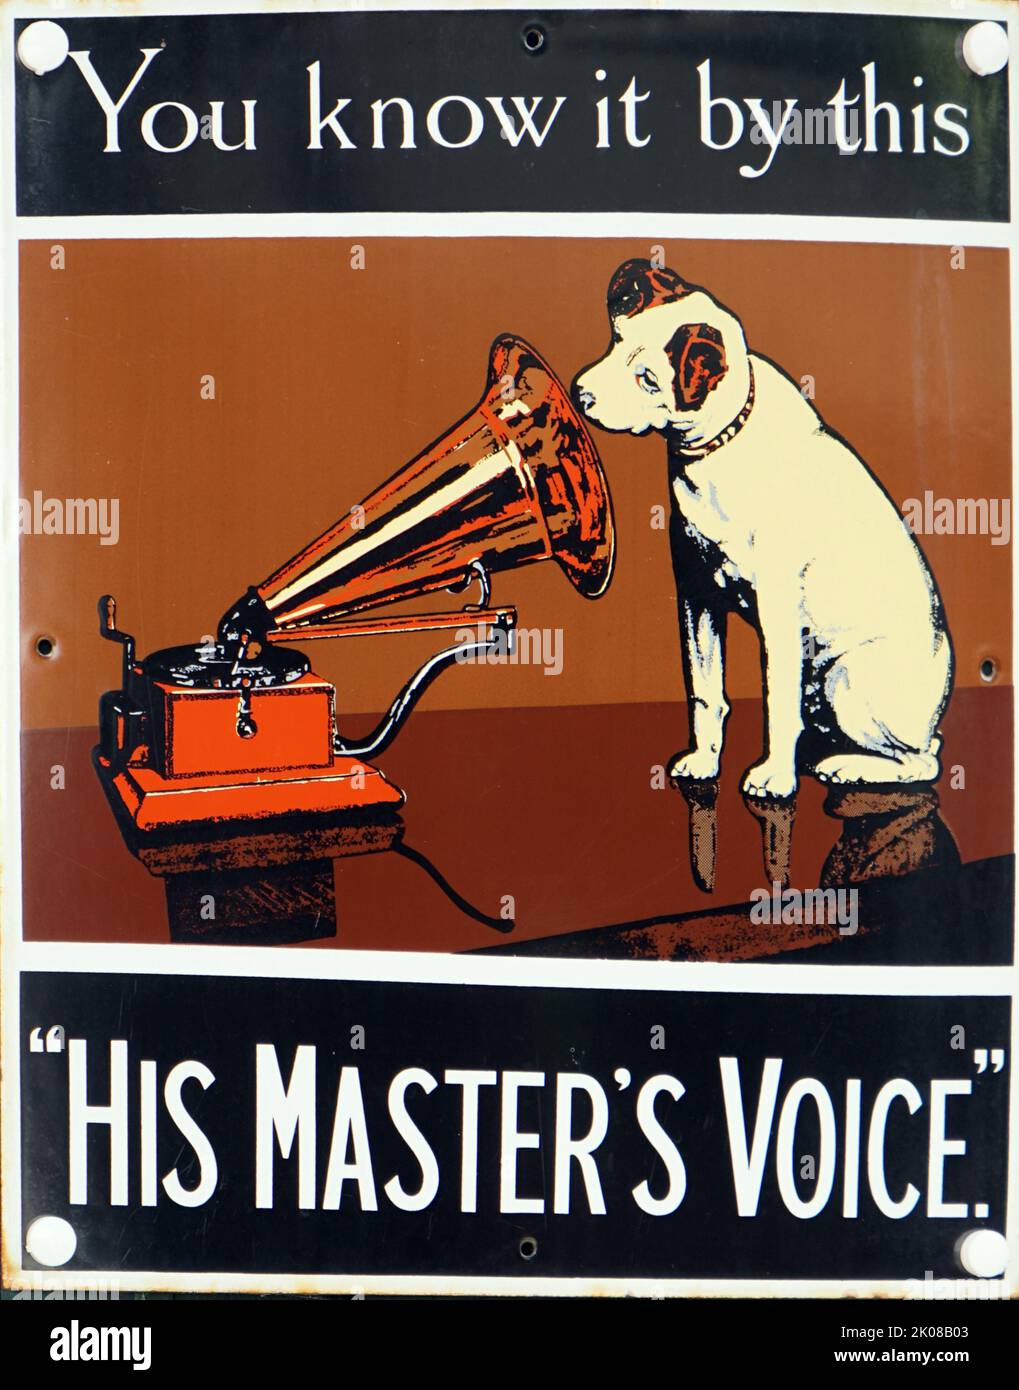 Publicidad de su Master's Voice (HMV) fue el nombre de un importante sello discográfico británico creado en 1901 por la Gramophone Co. Ltd. La frase fue acuñada a finales de 1890s como el título de una pintura que representa un perro terrier-mezcla llamado Nipper escuchando un gramófono de disco y viento inclinando su cabeza Foto de stock